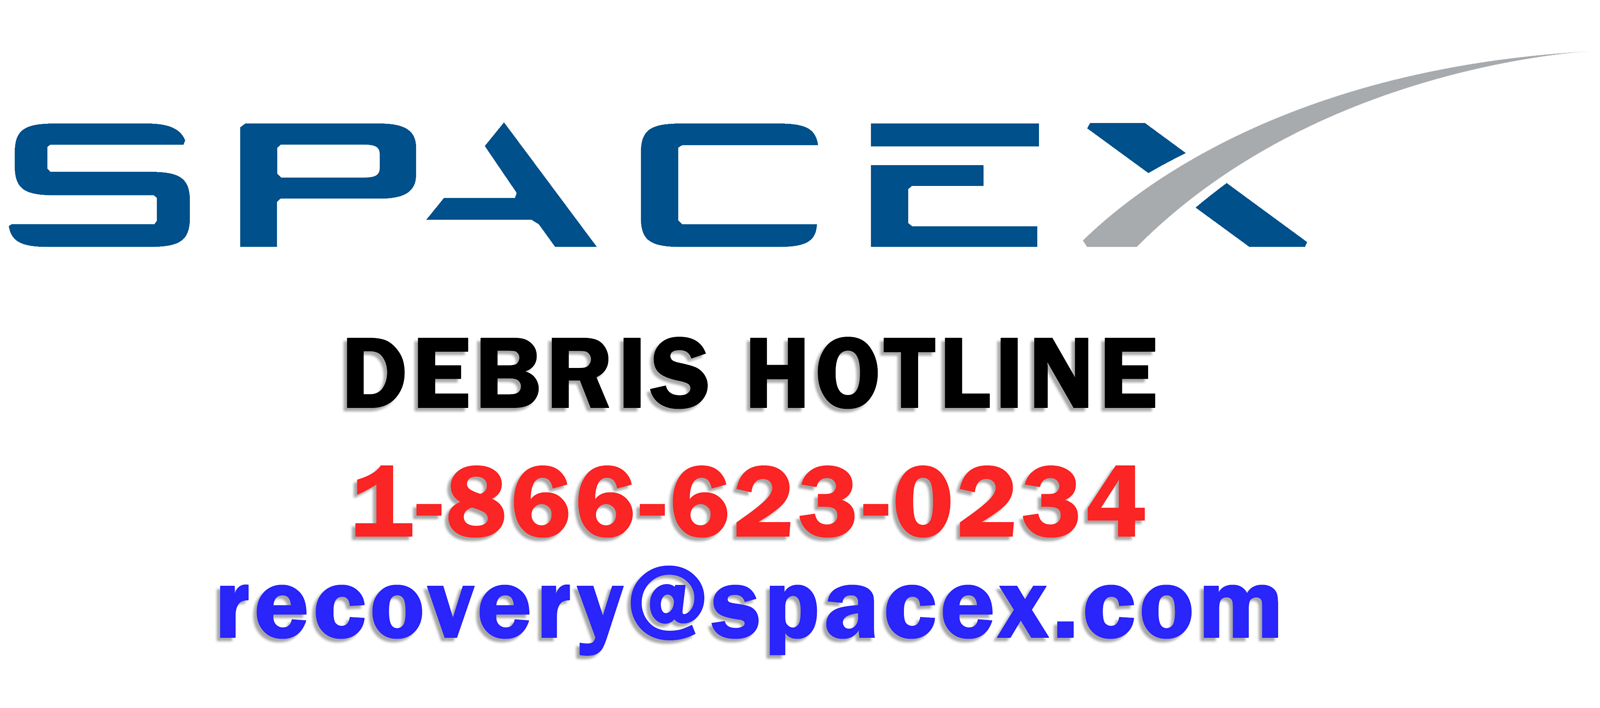 SpaceXDebris